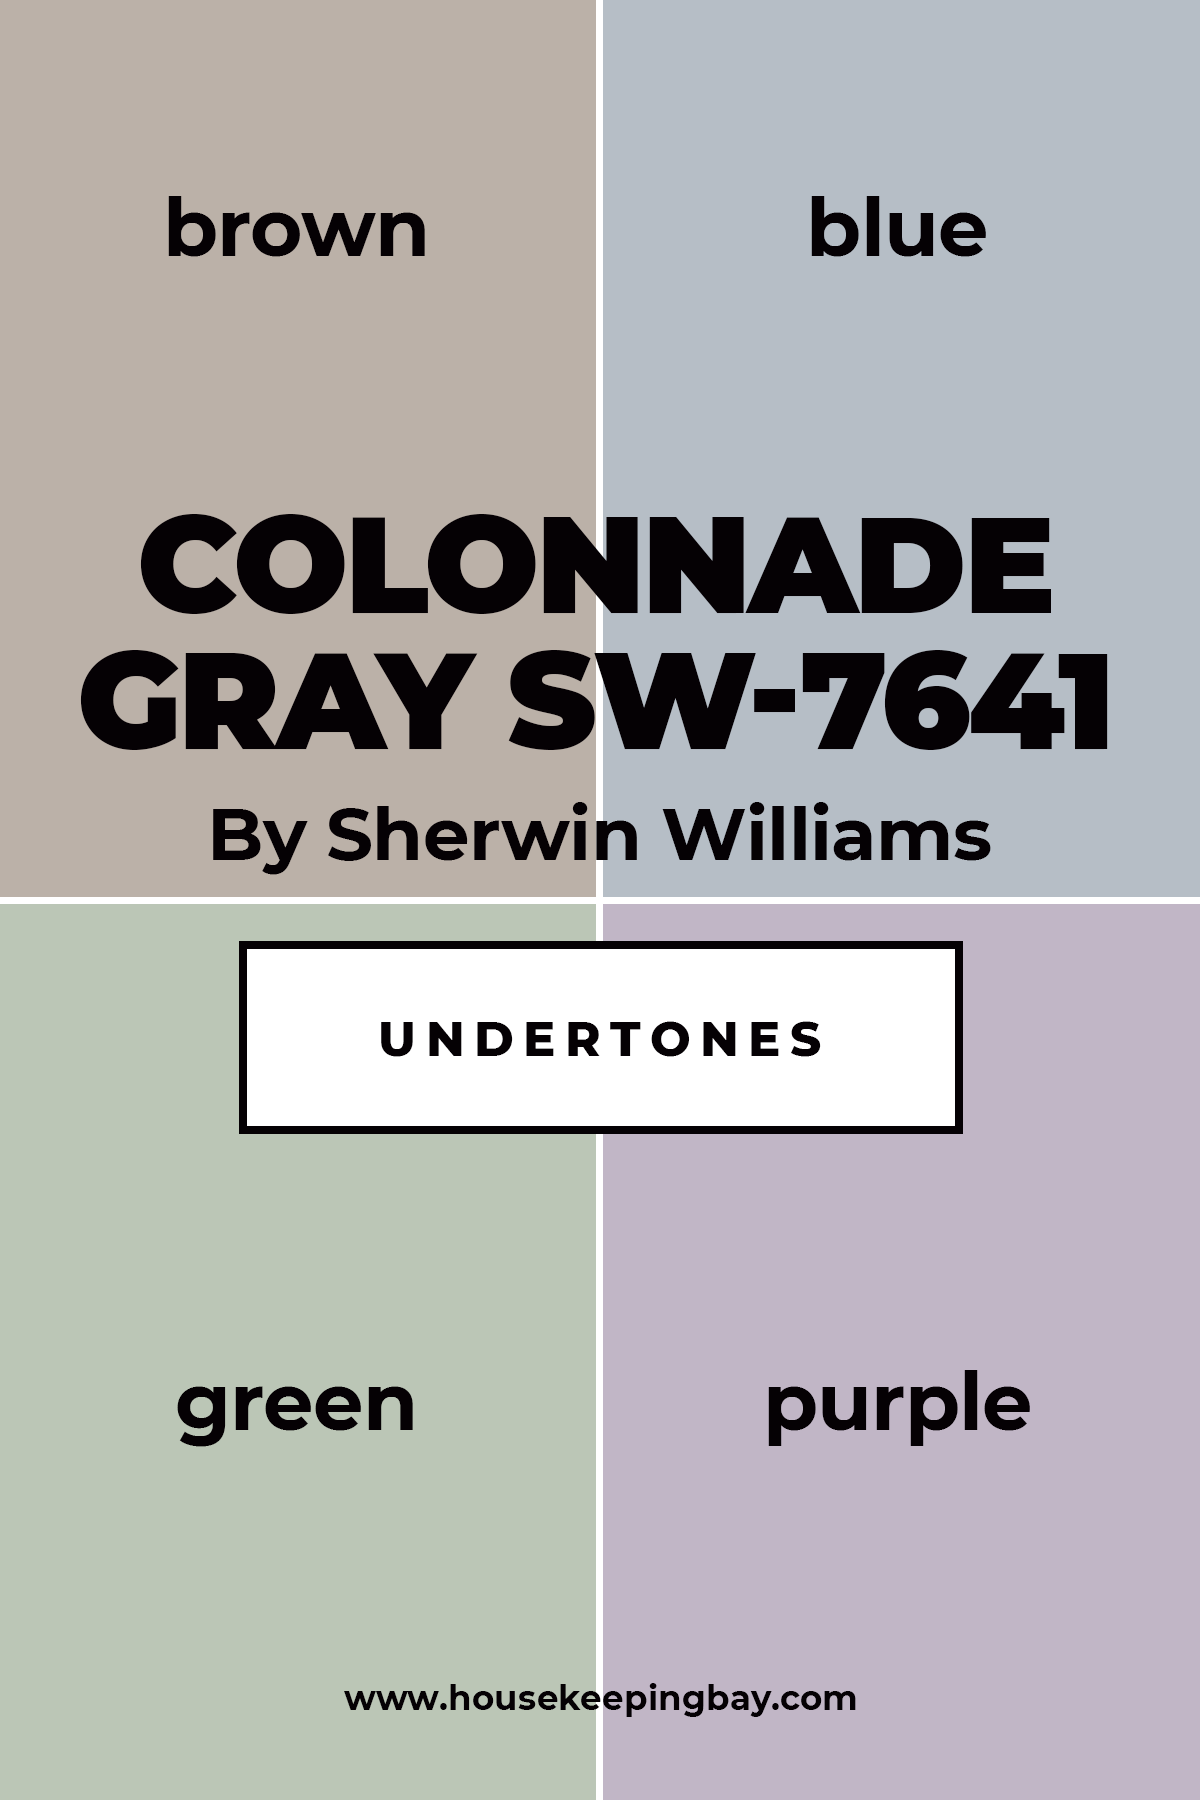 Colonnade Gray SW 7641 Undertones